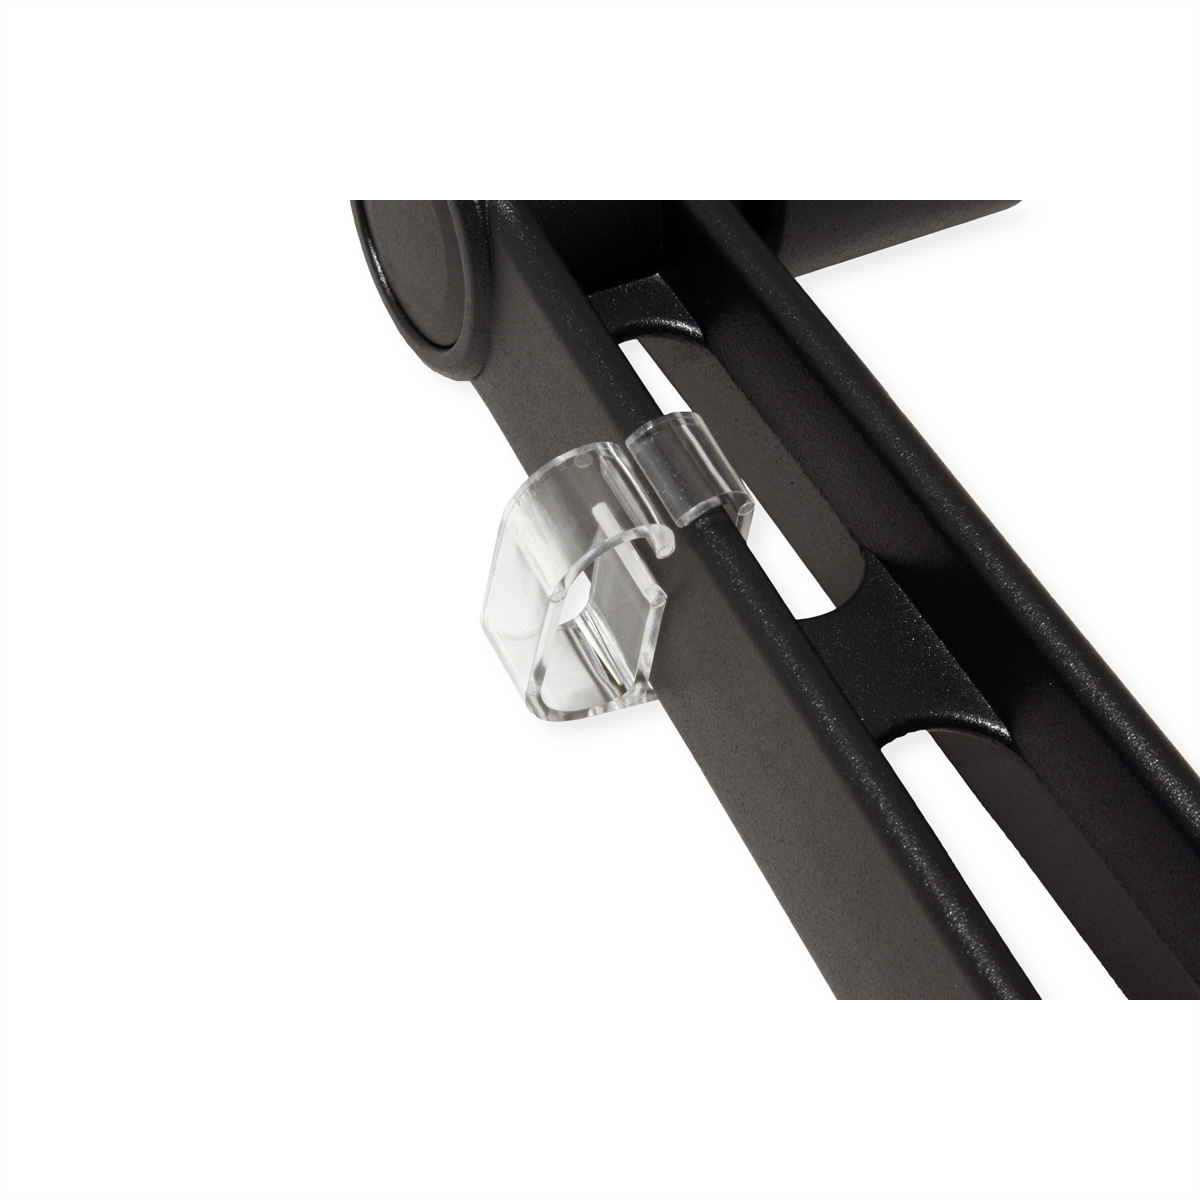 ROLINE - Verstellbarer Arm für LCD-Display - Aluminium - Schwarz - Wandmontage möglich (17.03.1198)